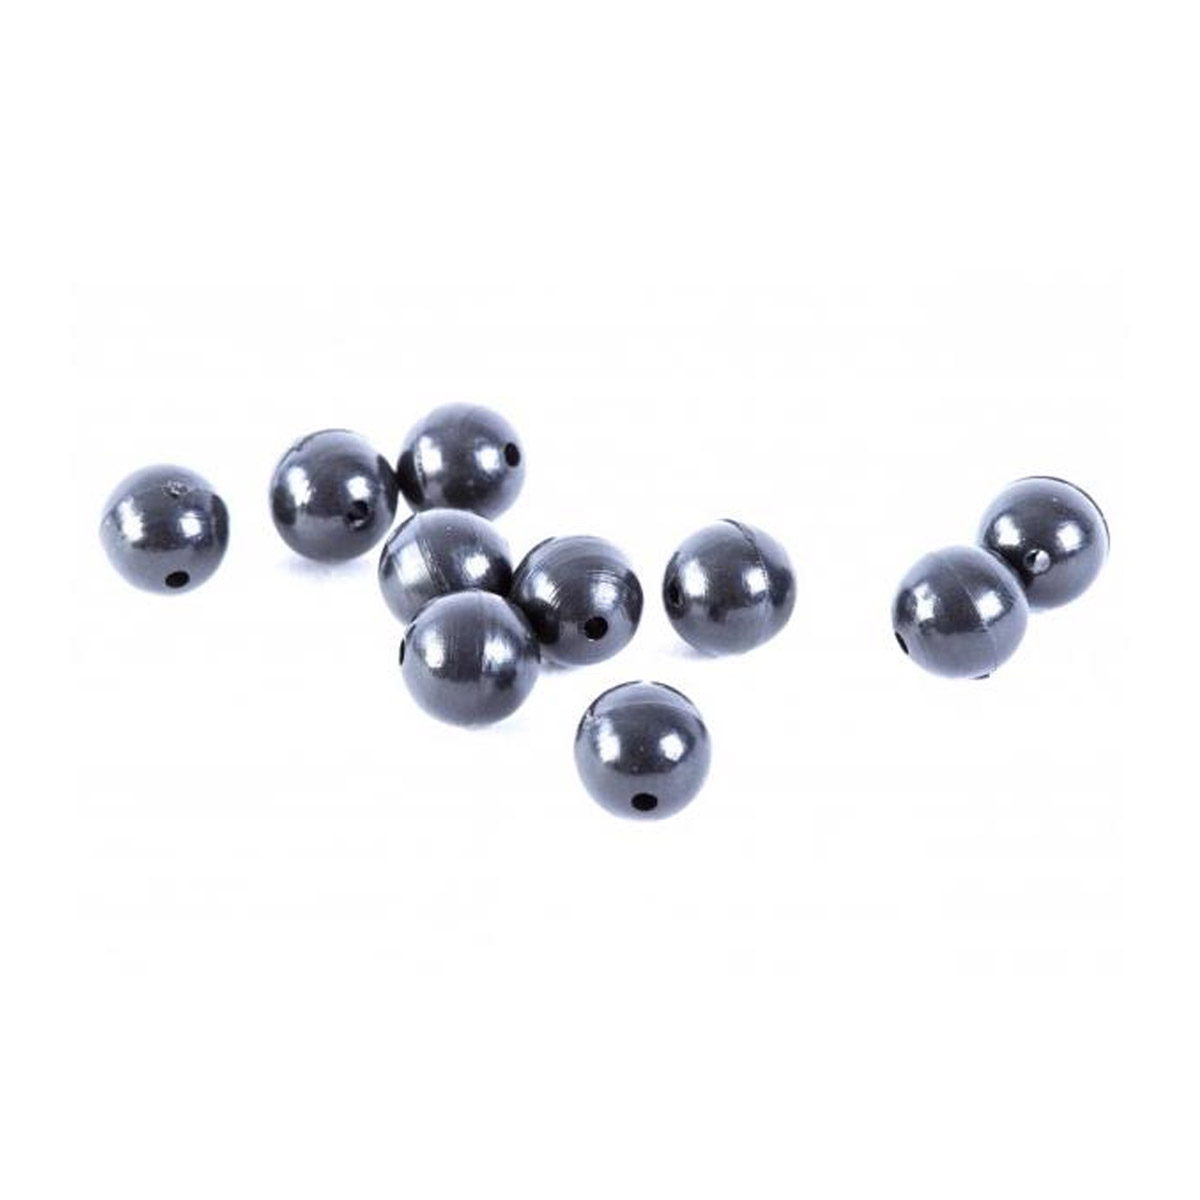 Korum Hard Beads 8 MM